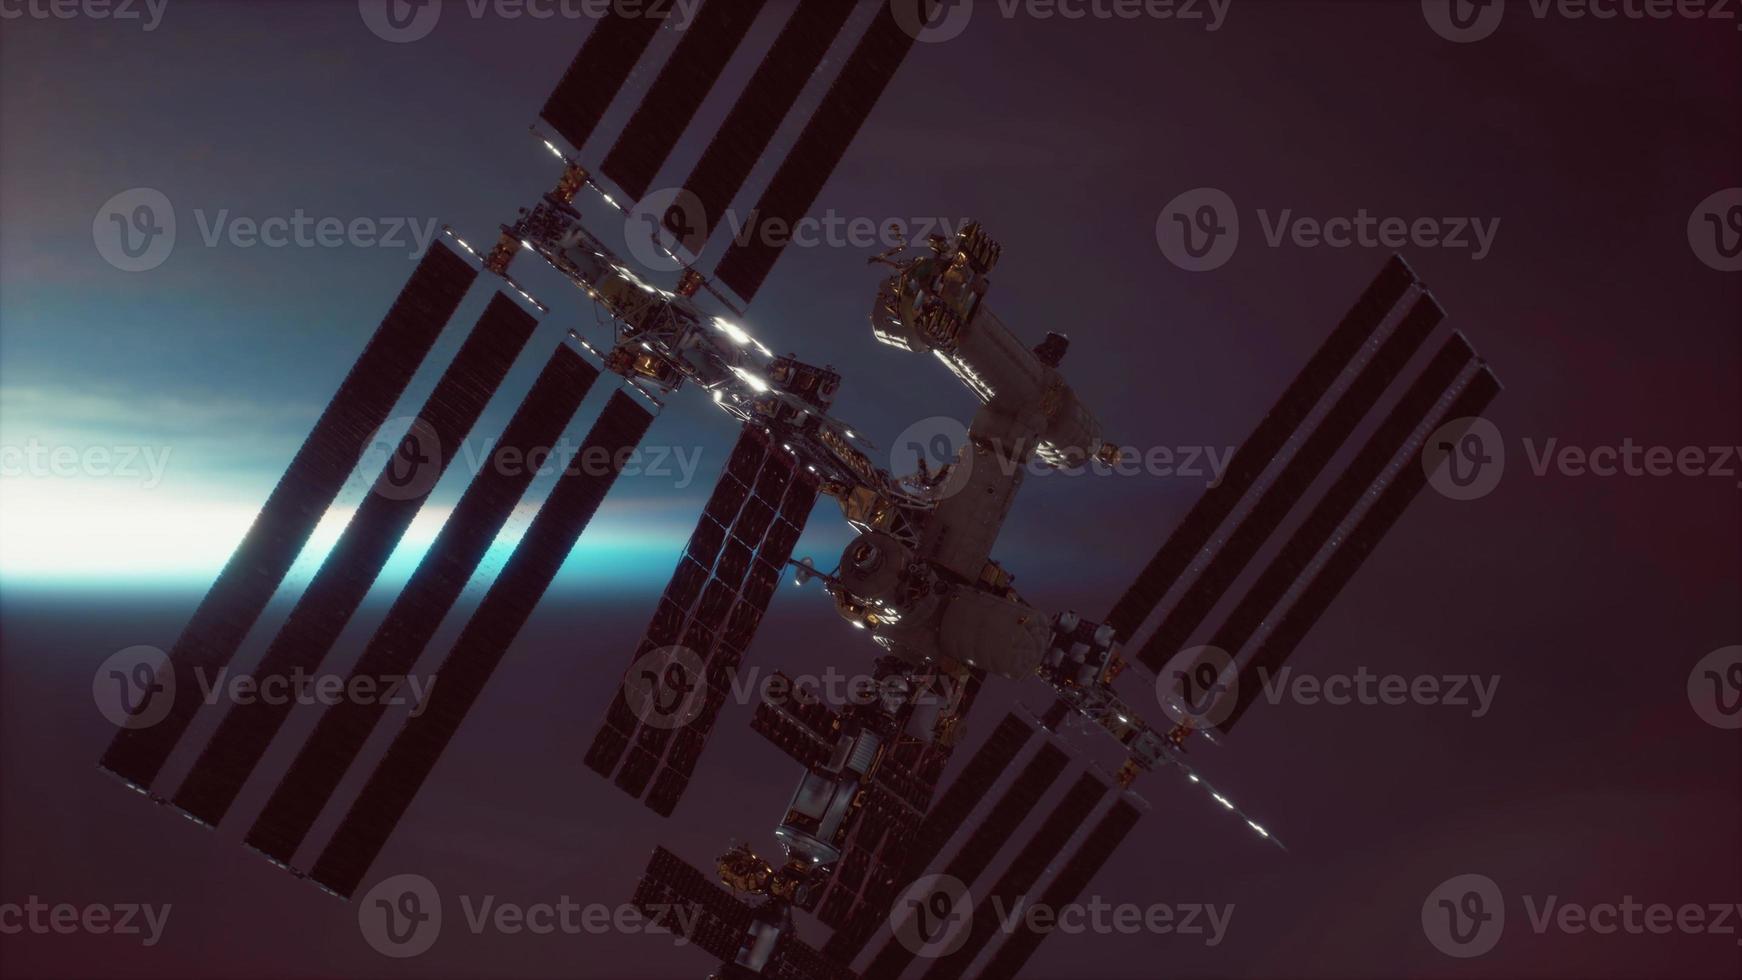 internationaal ruimtestation over de aarde-elementen ingericht door nasa foto